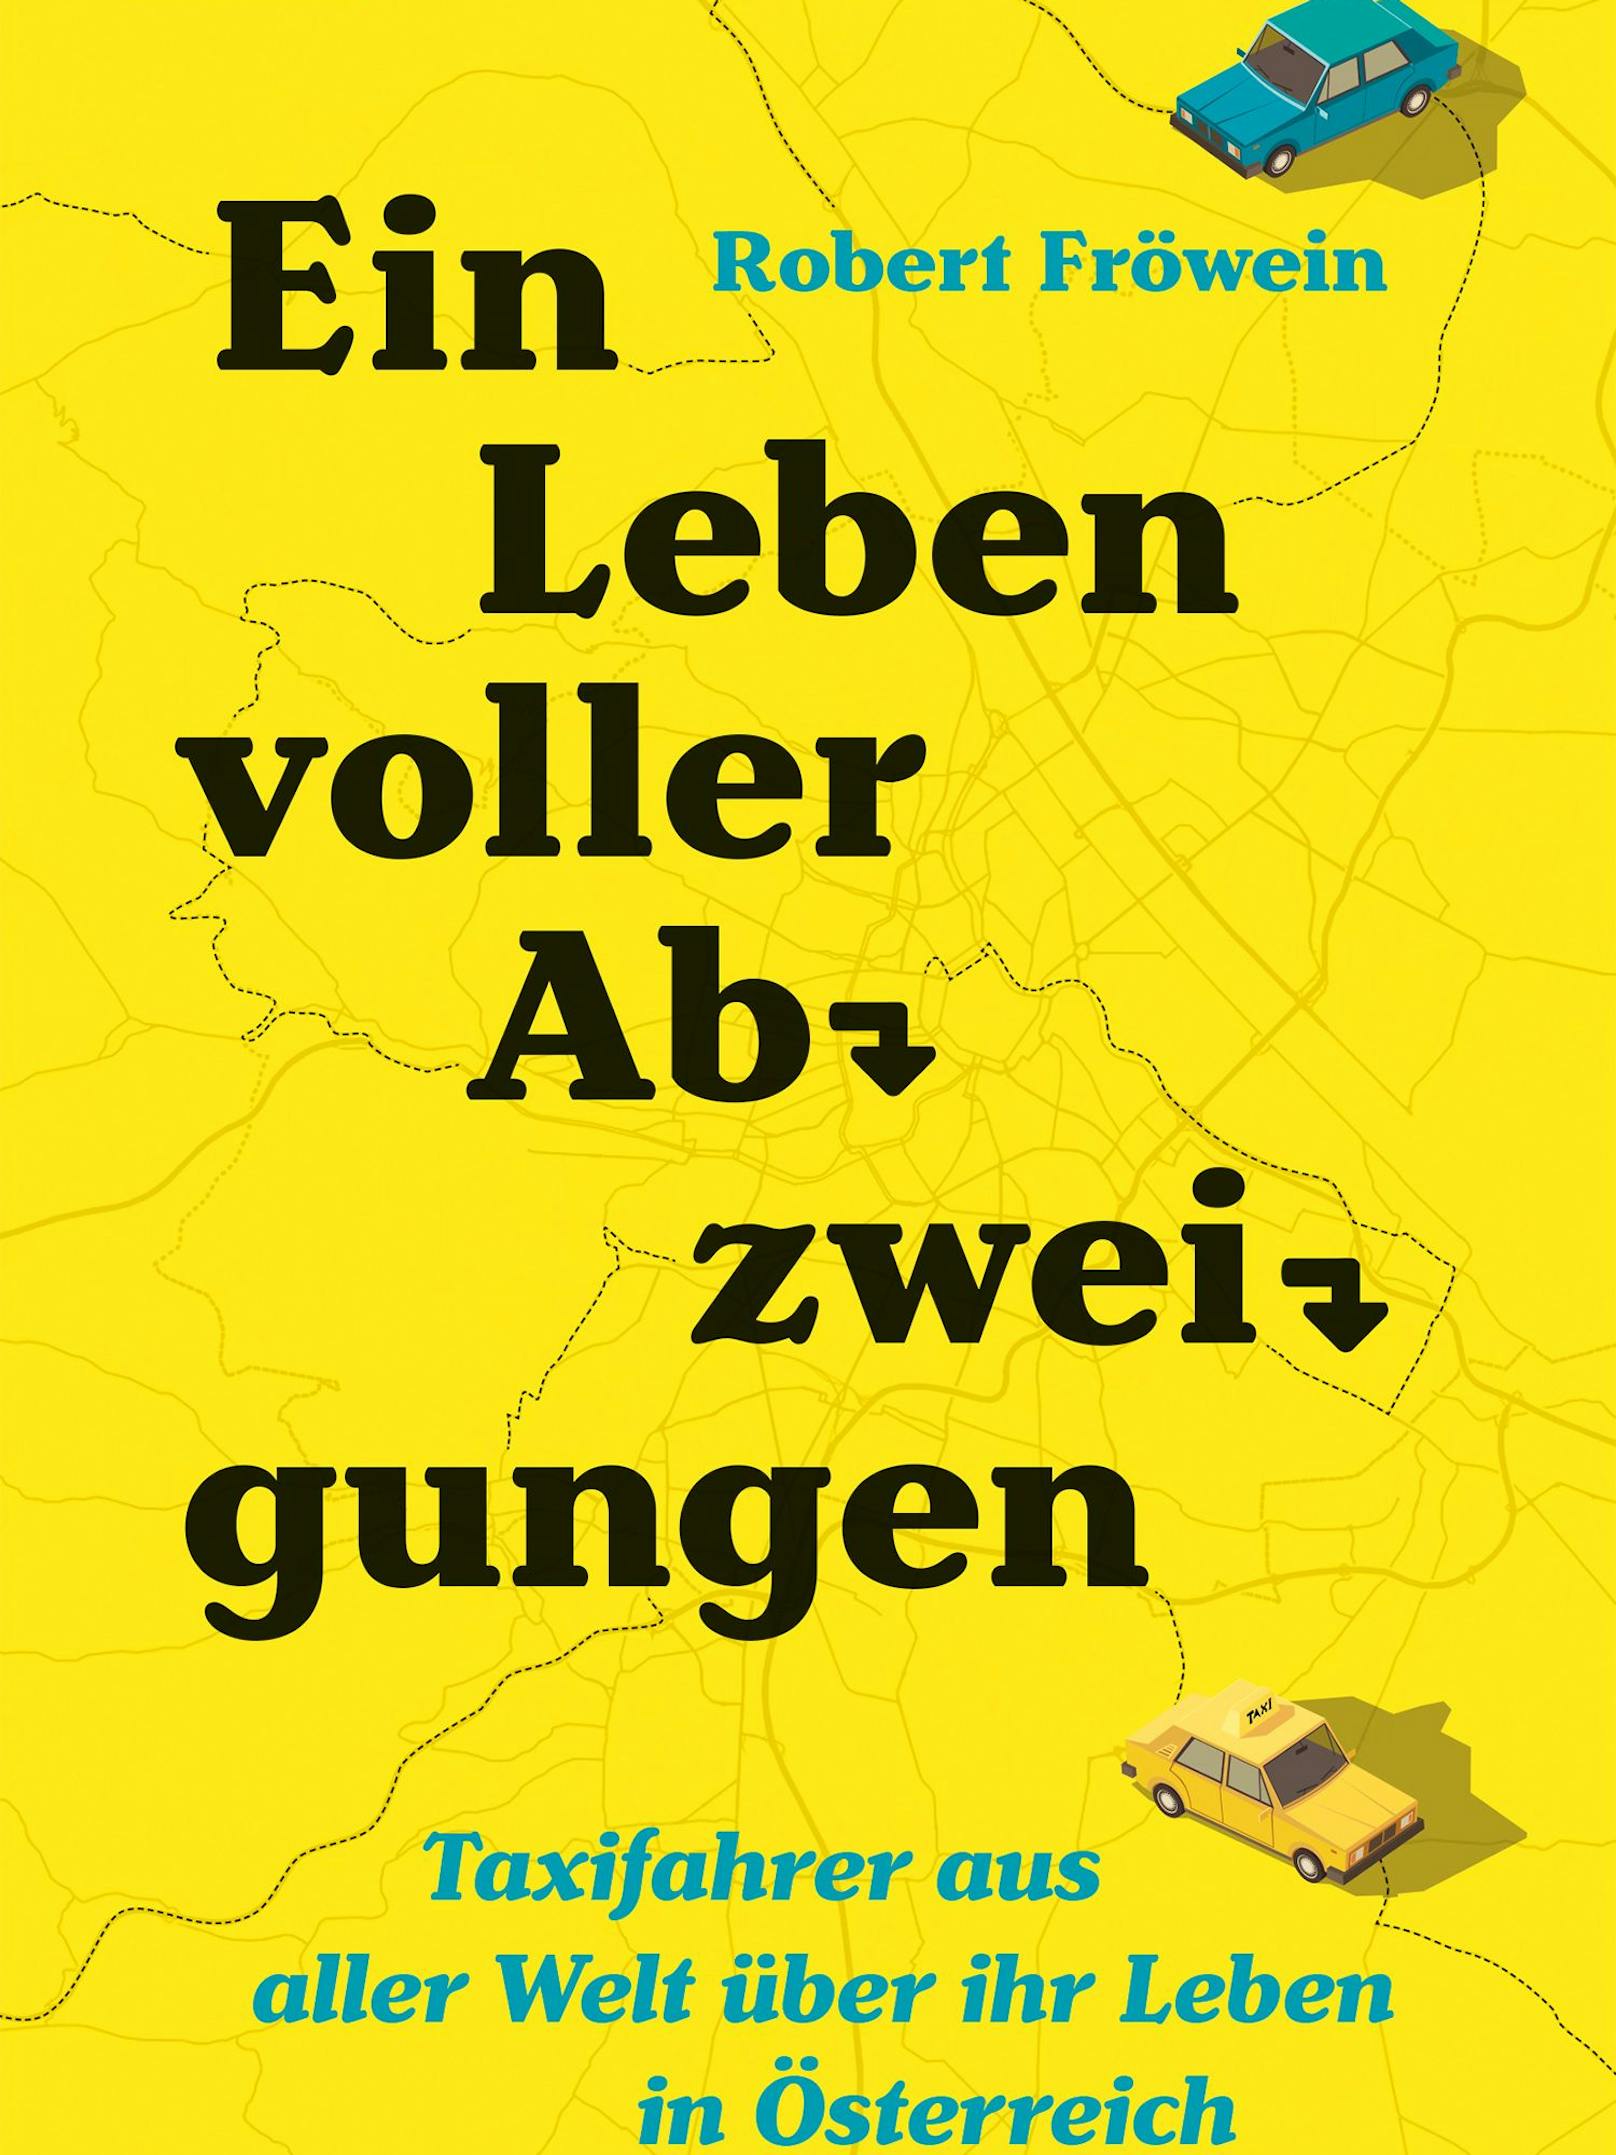 Journalist schreibt über das Leben von Uber-Fahrern in Wien